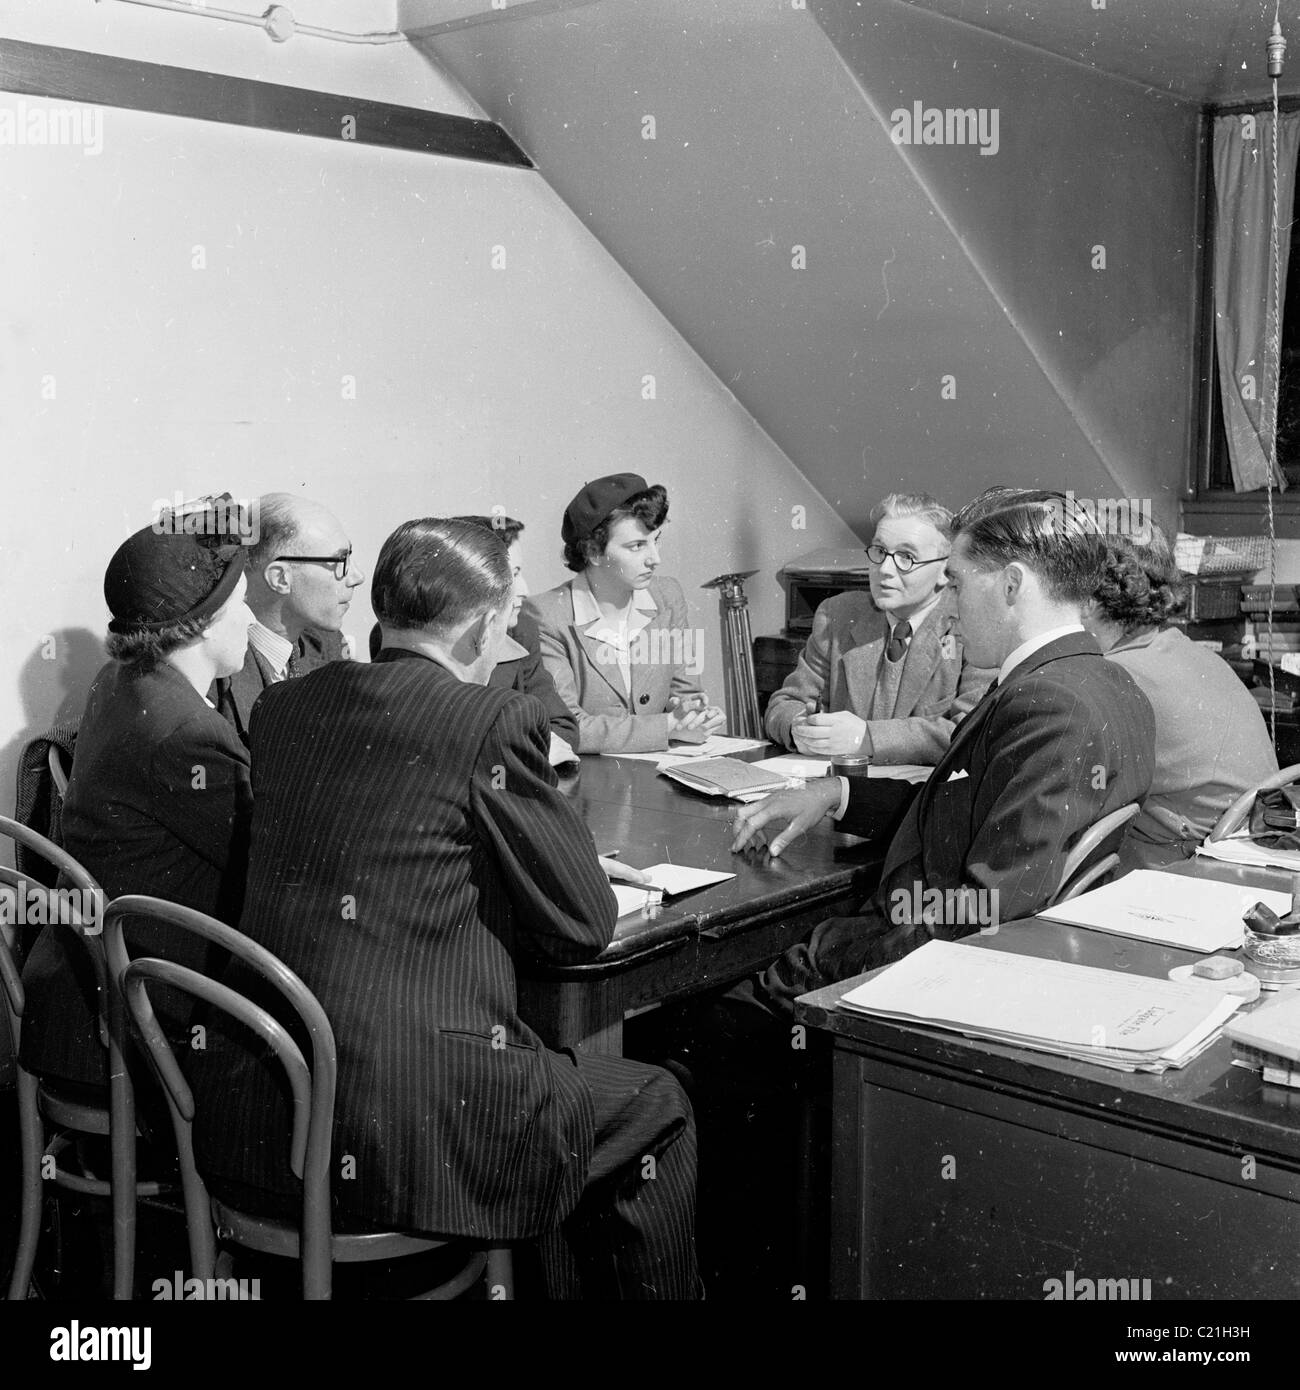 1950er Jahre, England. Kleine Gruppe von Männern und Frauen, die eine geschäftliche Konferenz, sitzen um einen Tisch in einem Manager in diesem historischen Bild. Stockfoto